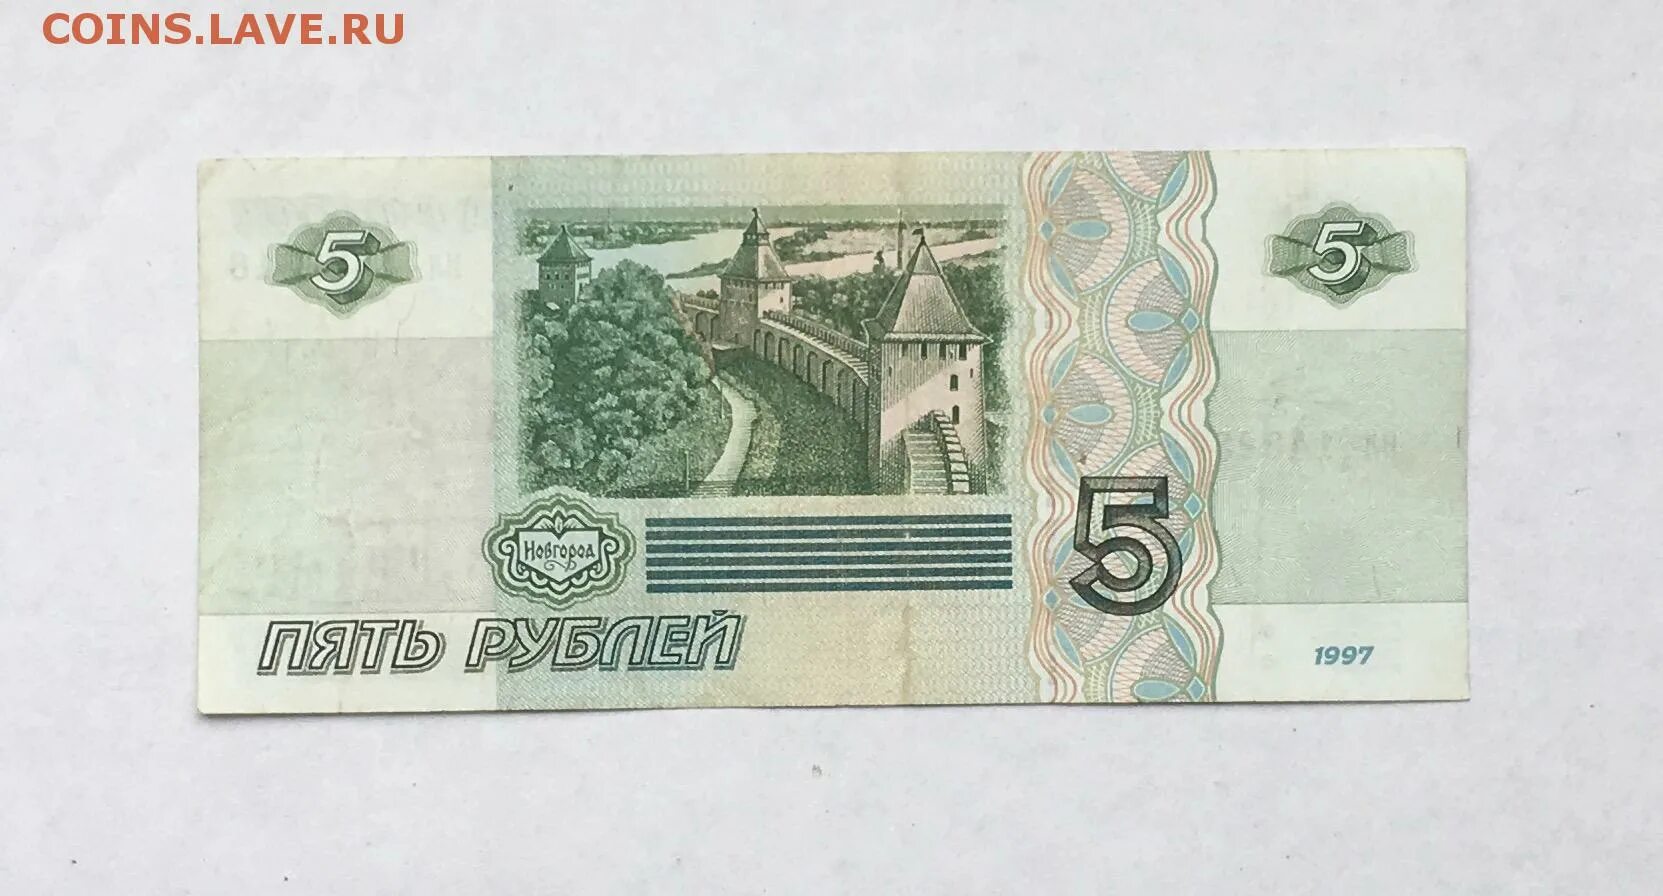 Купюра 5 рублей 1997. 5 Рублей 1997. Пять рублей банкнота 1997 года. 5 Рублей 1997 года купюра. 5 Рублей 1997 года.